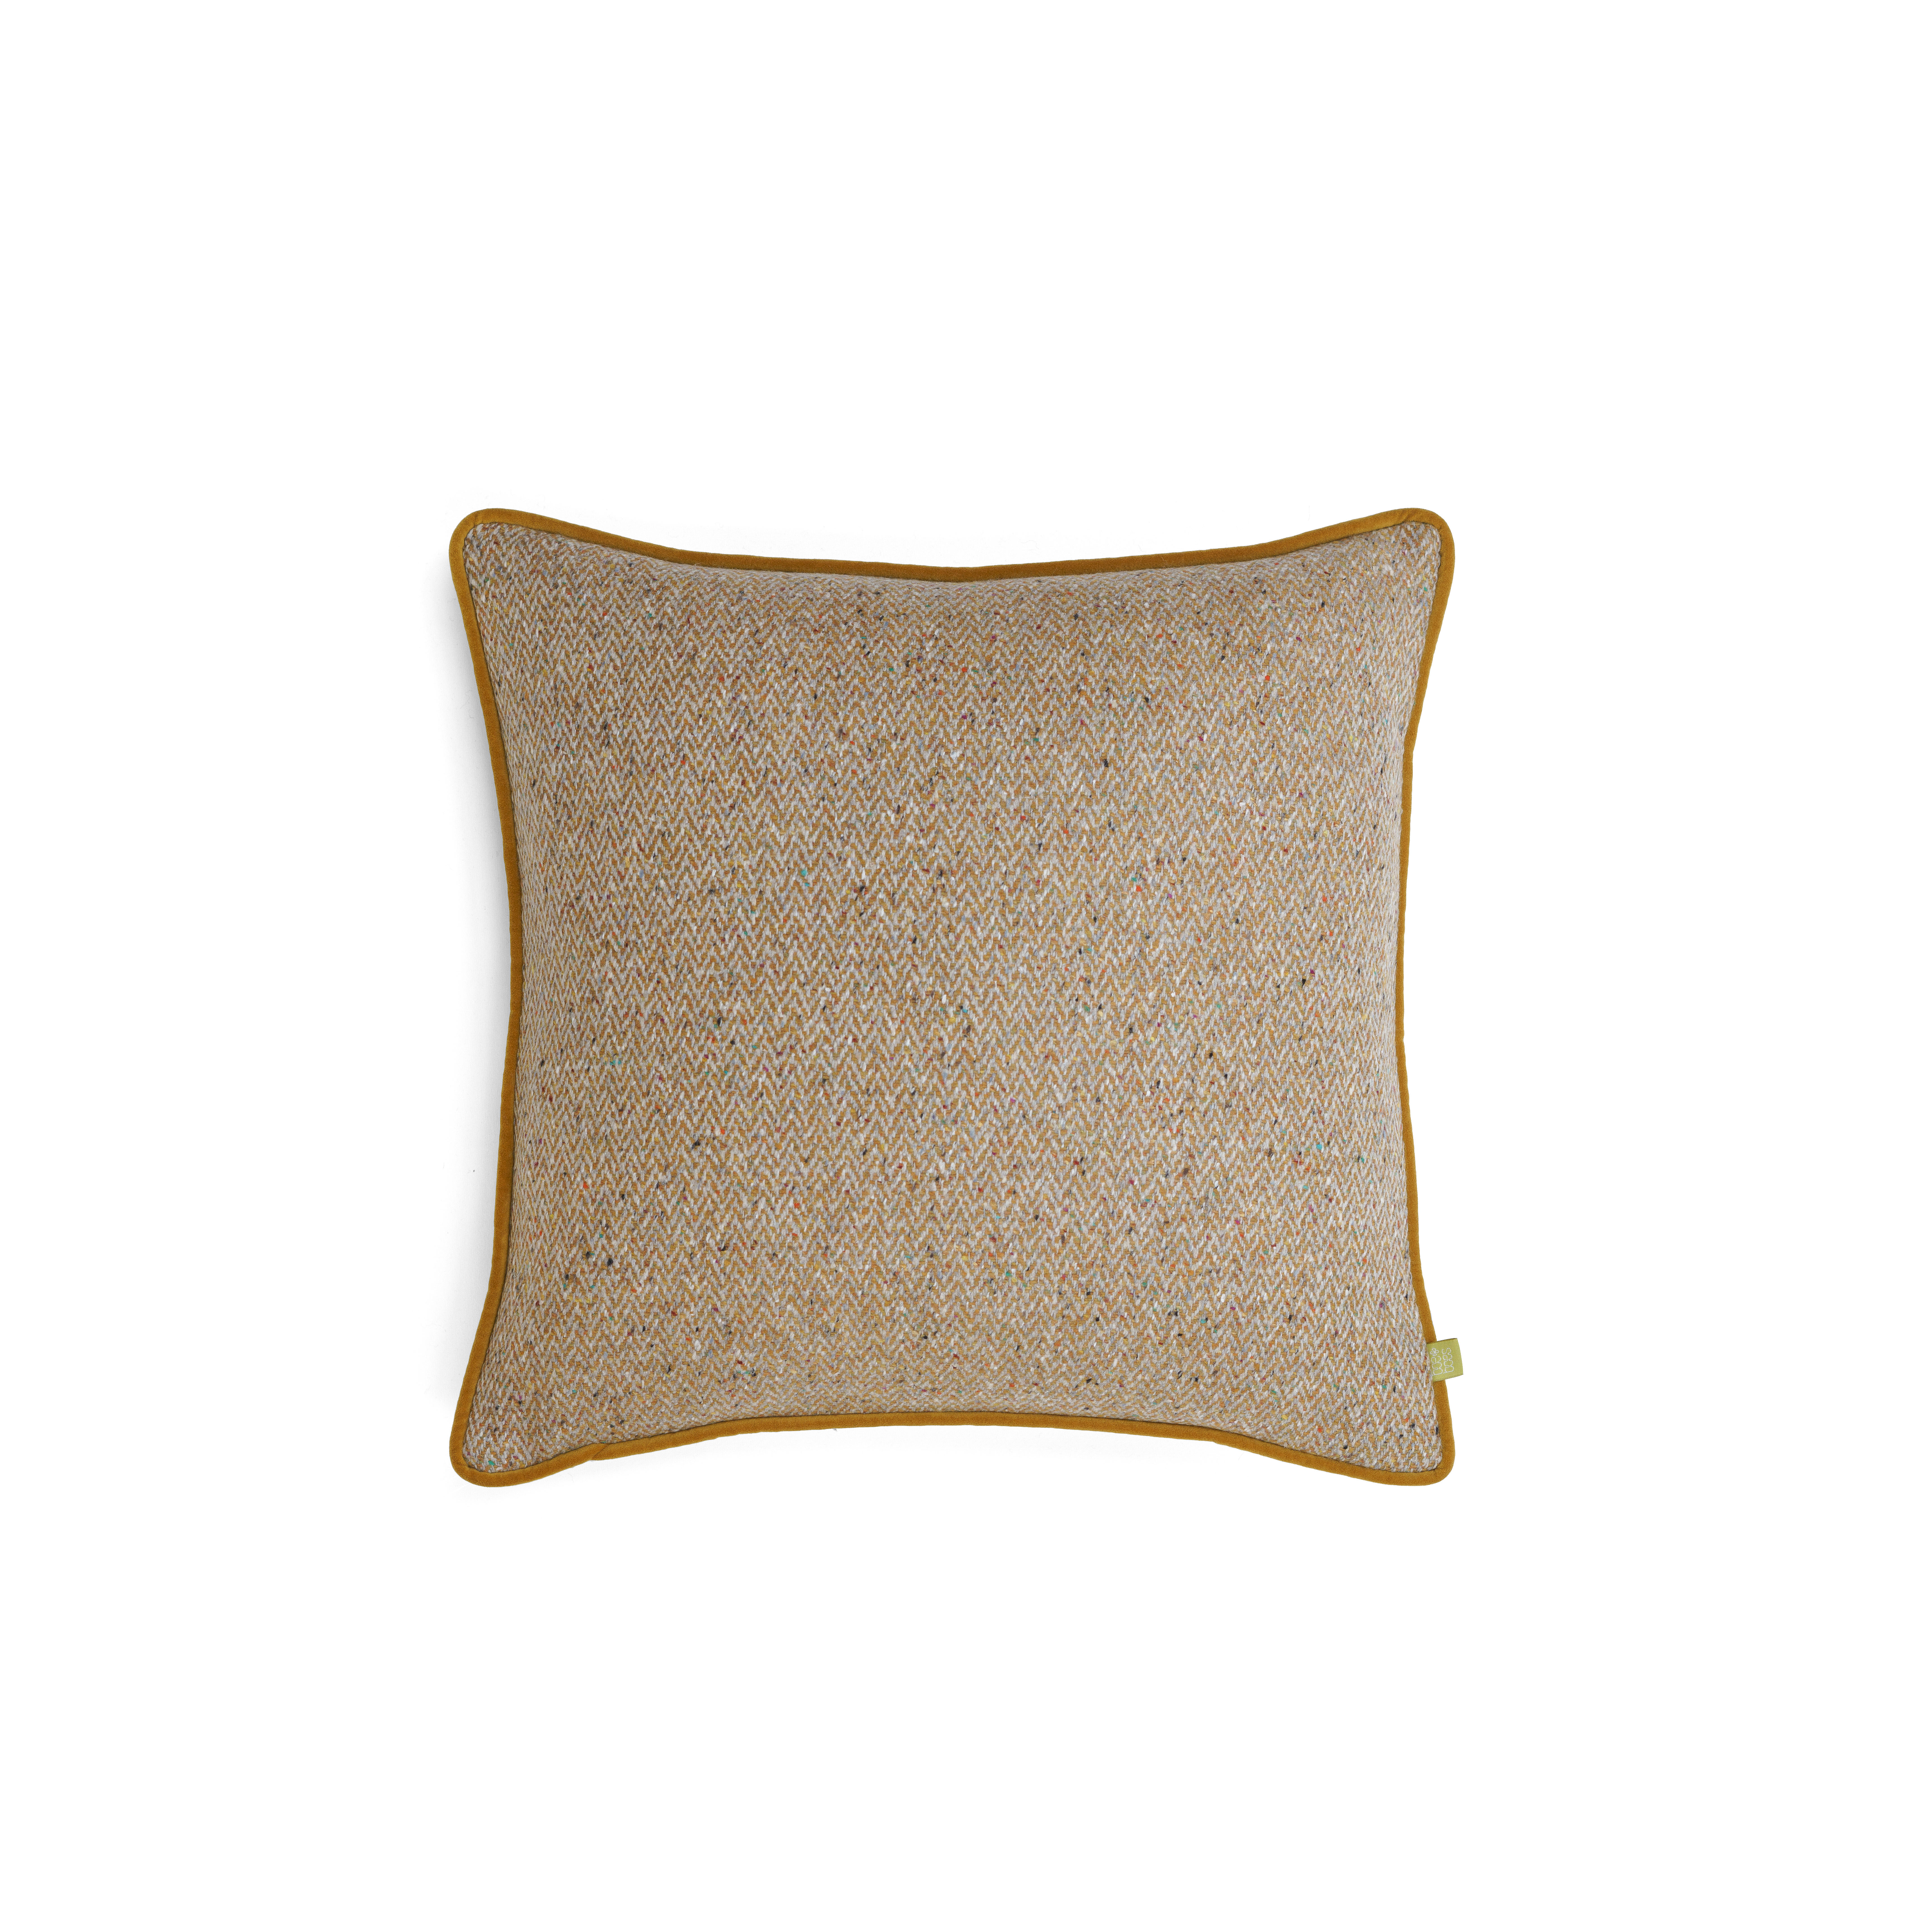 Luxury Cushions UK | Herringbone Cushions | Herringbone Tweed Cushions